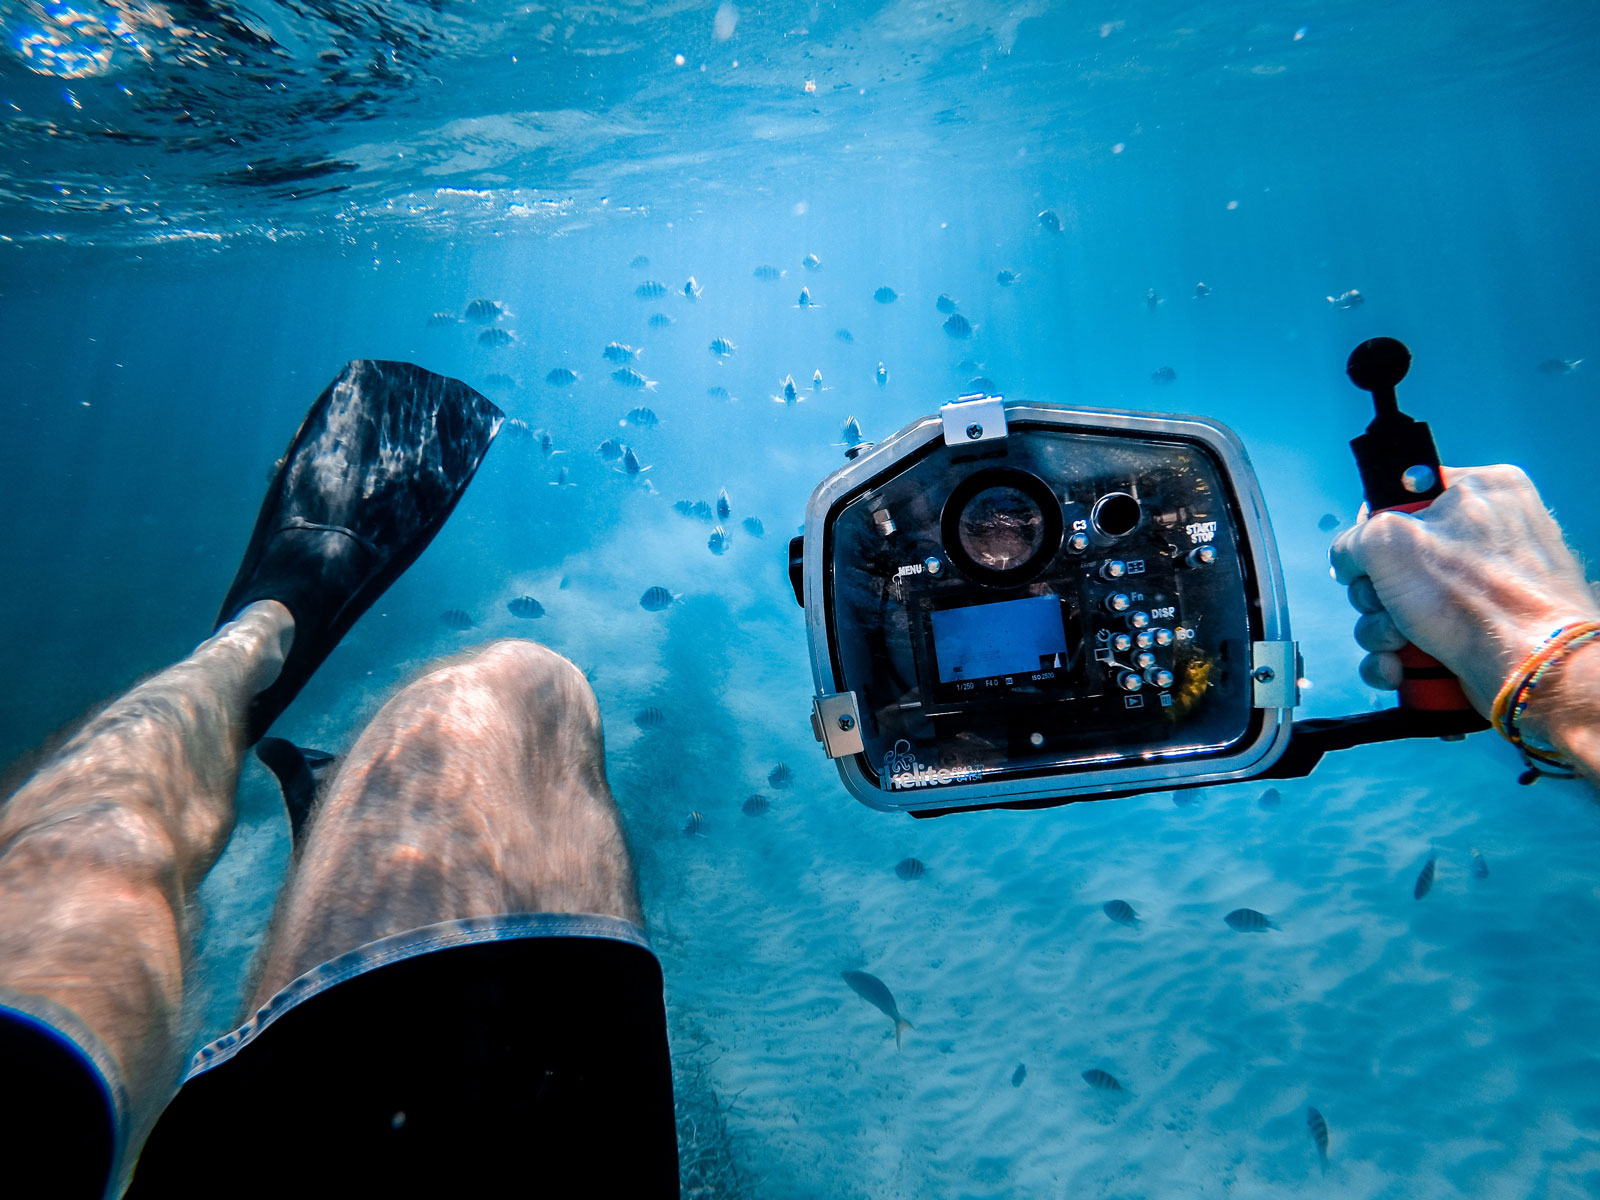 Lot de 3 appareils photo jetables étanches sous-marins à usage unique avec  flash pour l'été, la plage, les vacances, le camping, la plongée avec tuba,  les voyages, les adultes et les adolescents 